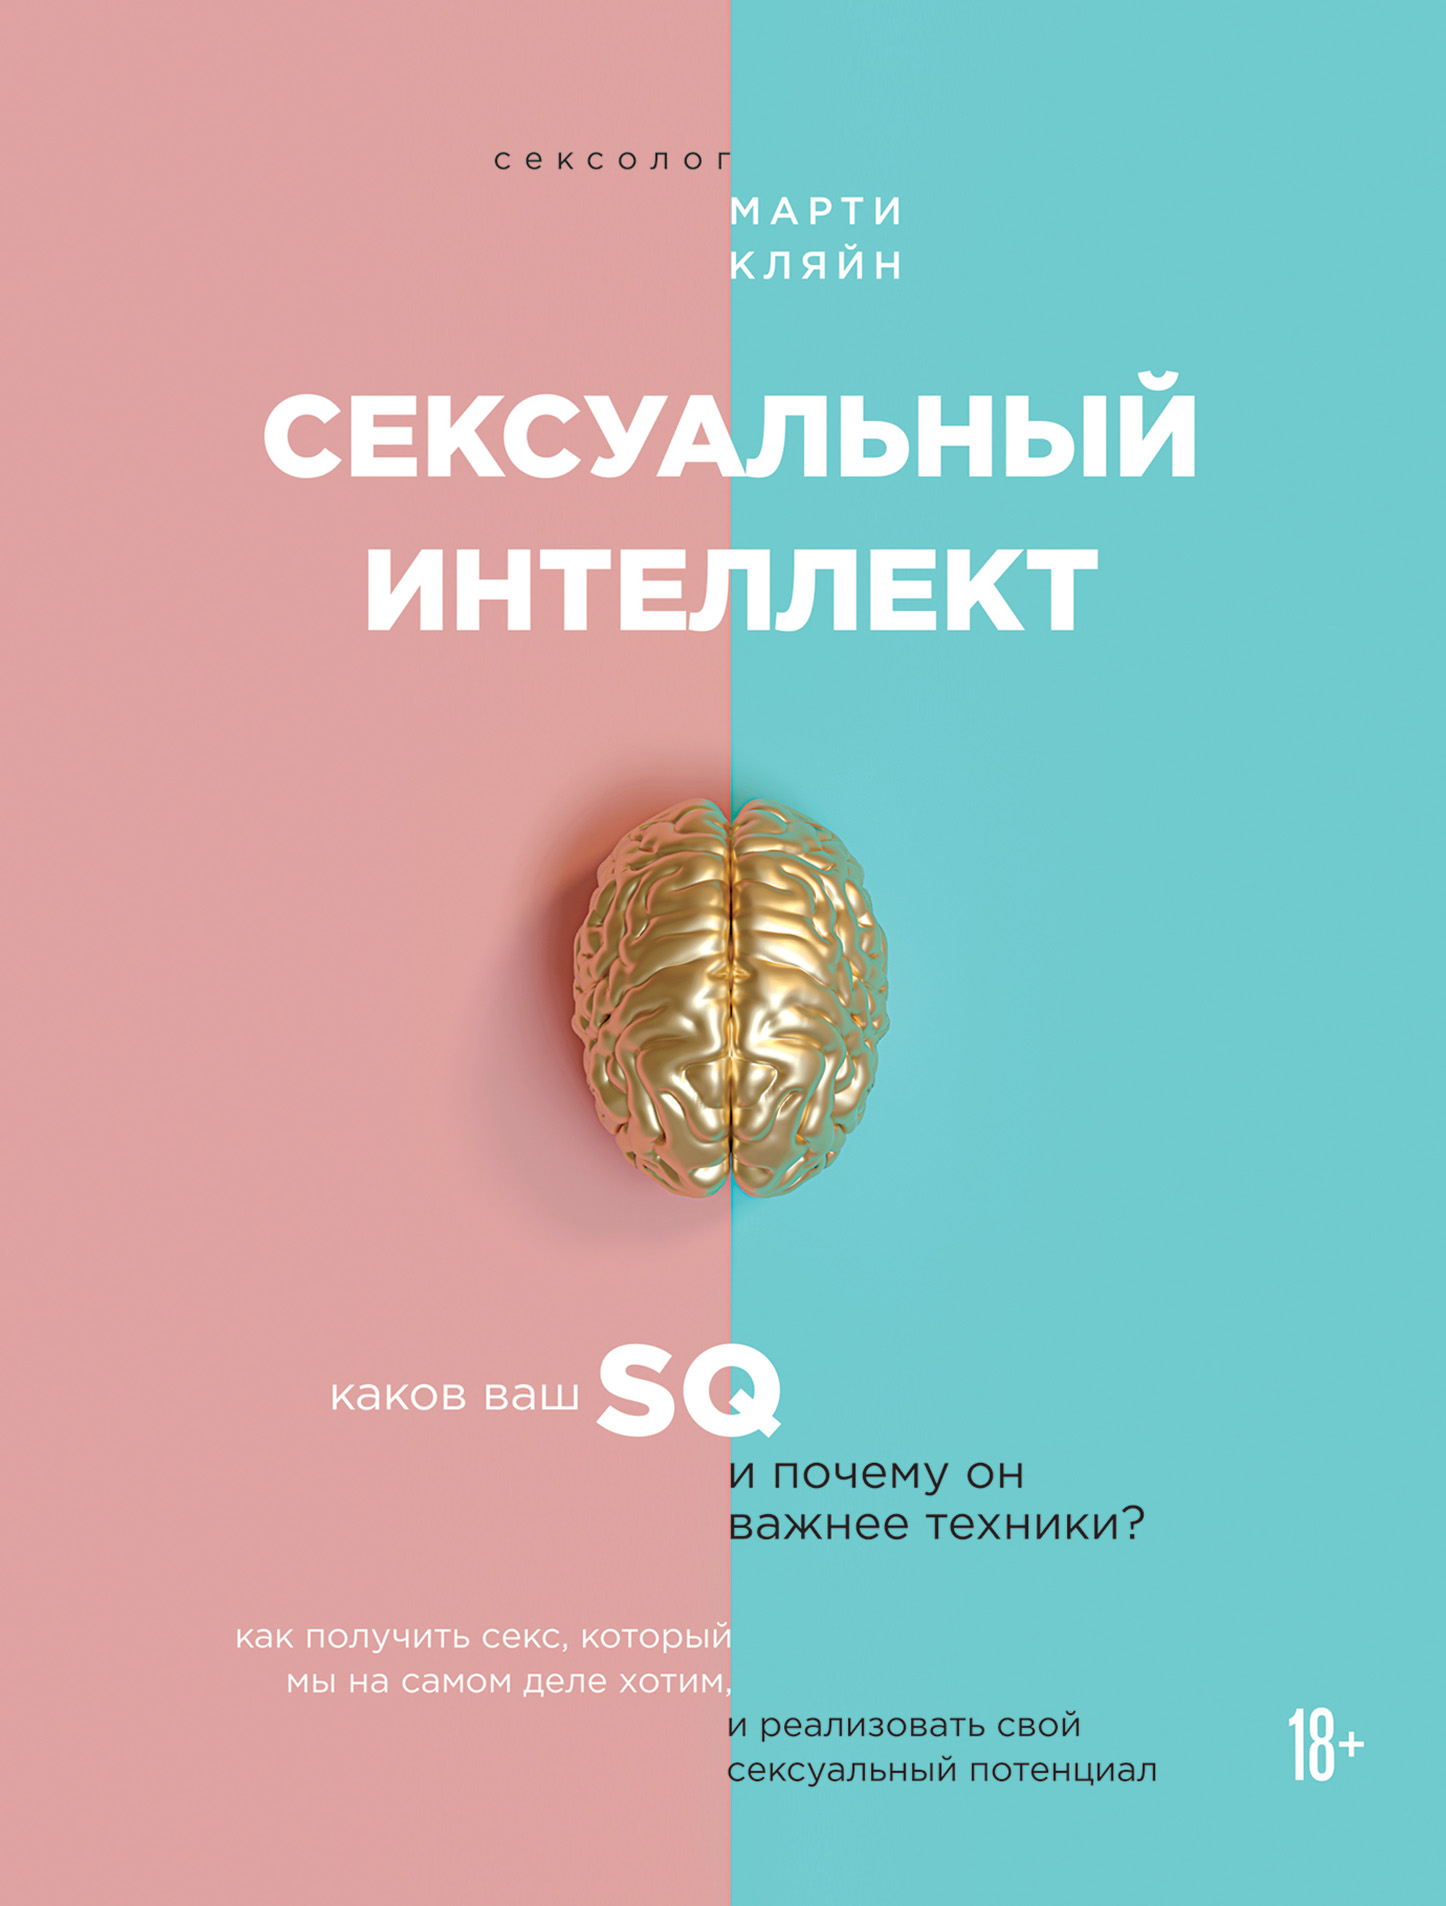 Виртуальный секс пример =) - Секс | форум city-lawyers.ru